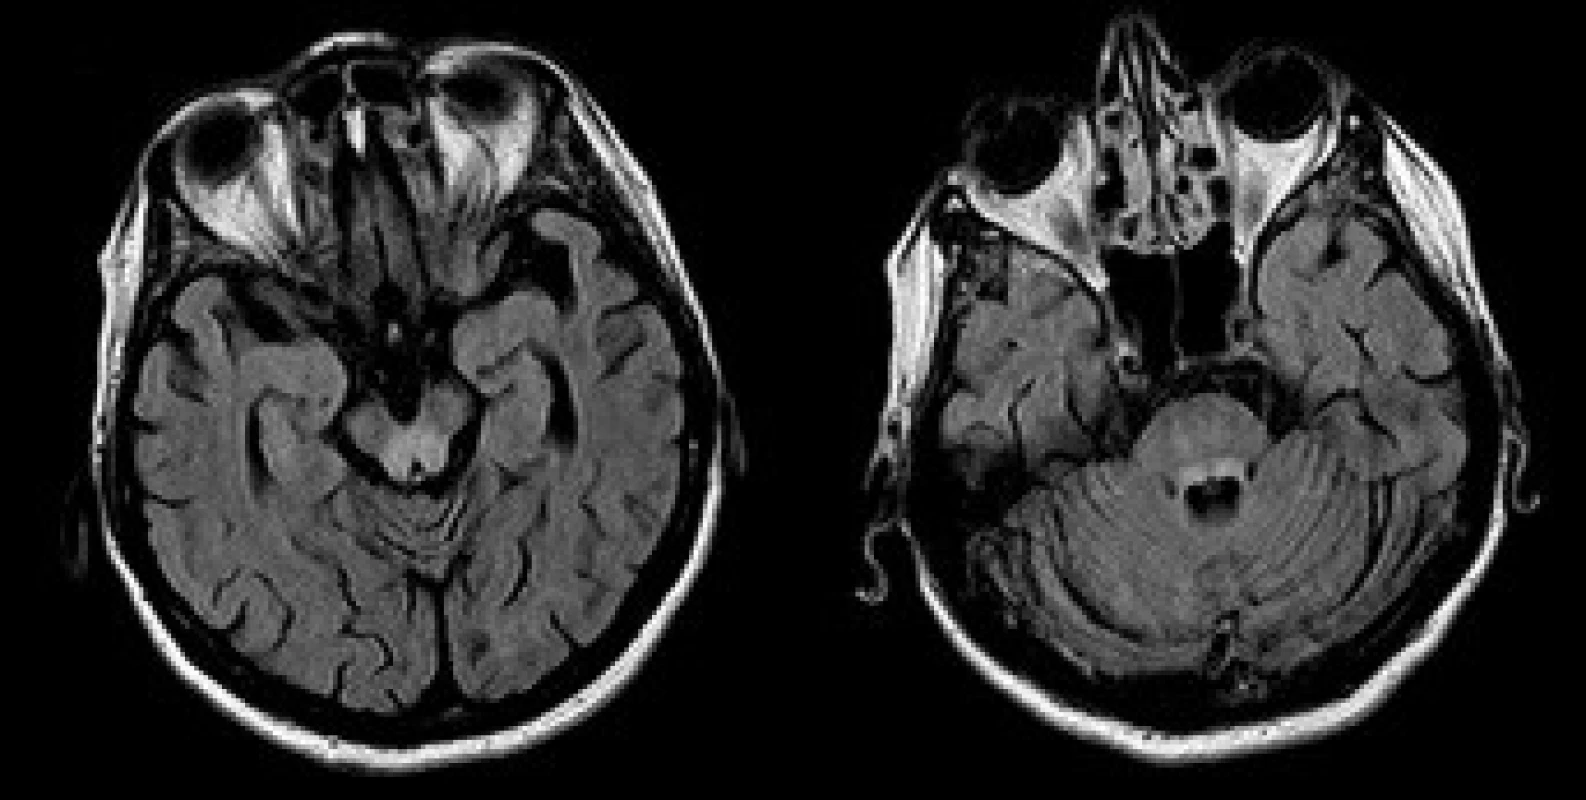 MRI mozku, transverzální vrstvy sekvence FLAIR. Patologické zóny T2 hyperintenzního signálu v oblasti colliculi inferiores (a) a horních mozečkových pedunkulů (b).